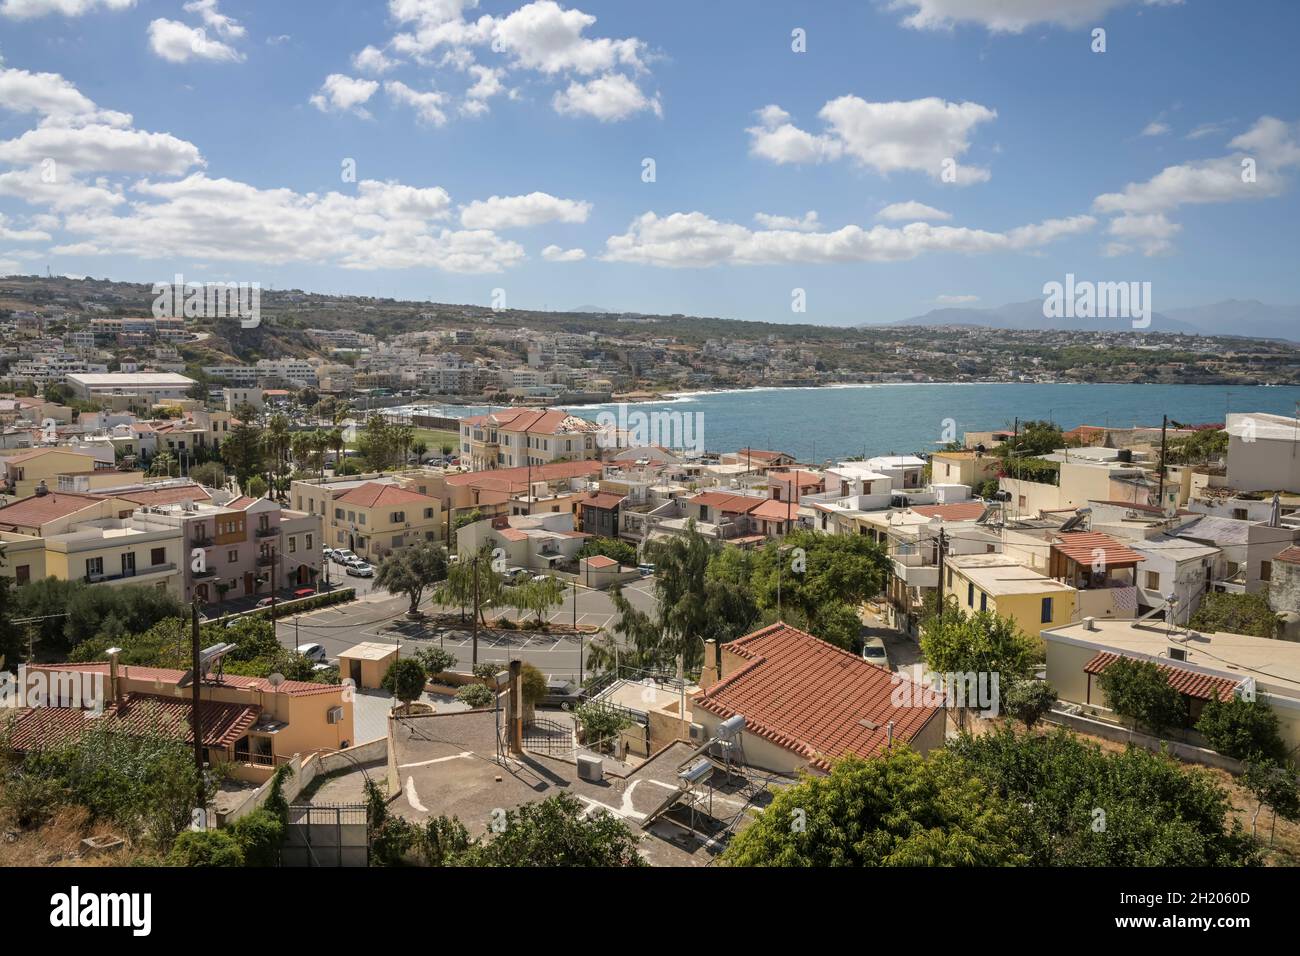 Stadtansicht, westliche Neustadt, Rethymno, Kreta, Griechenland Foto Stock